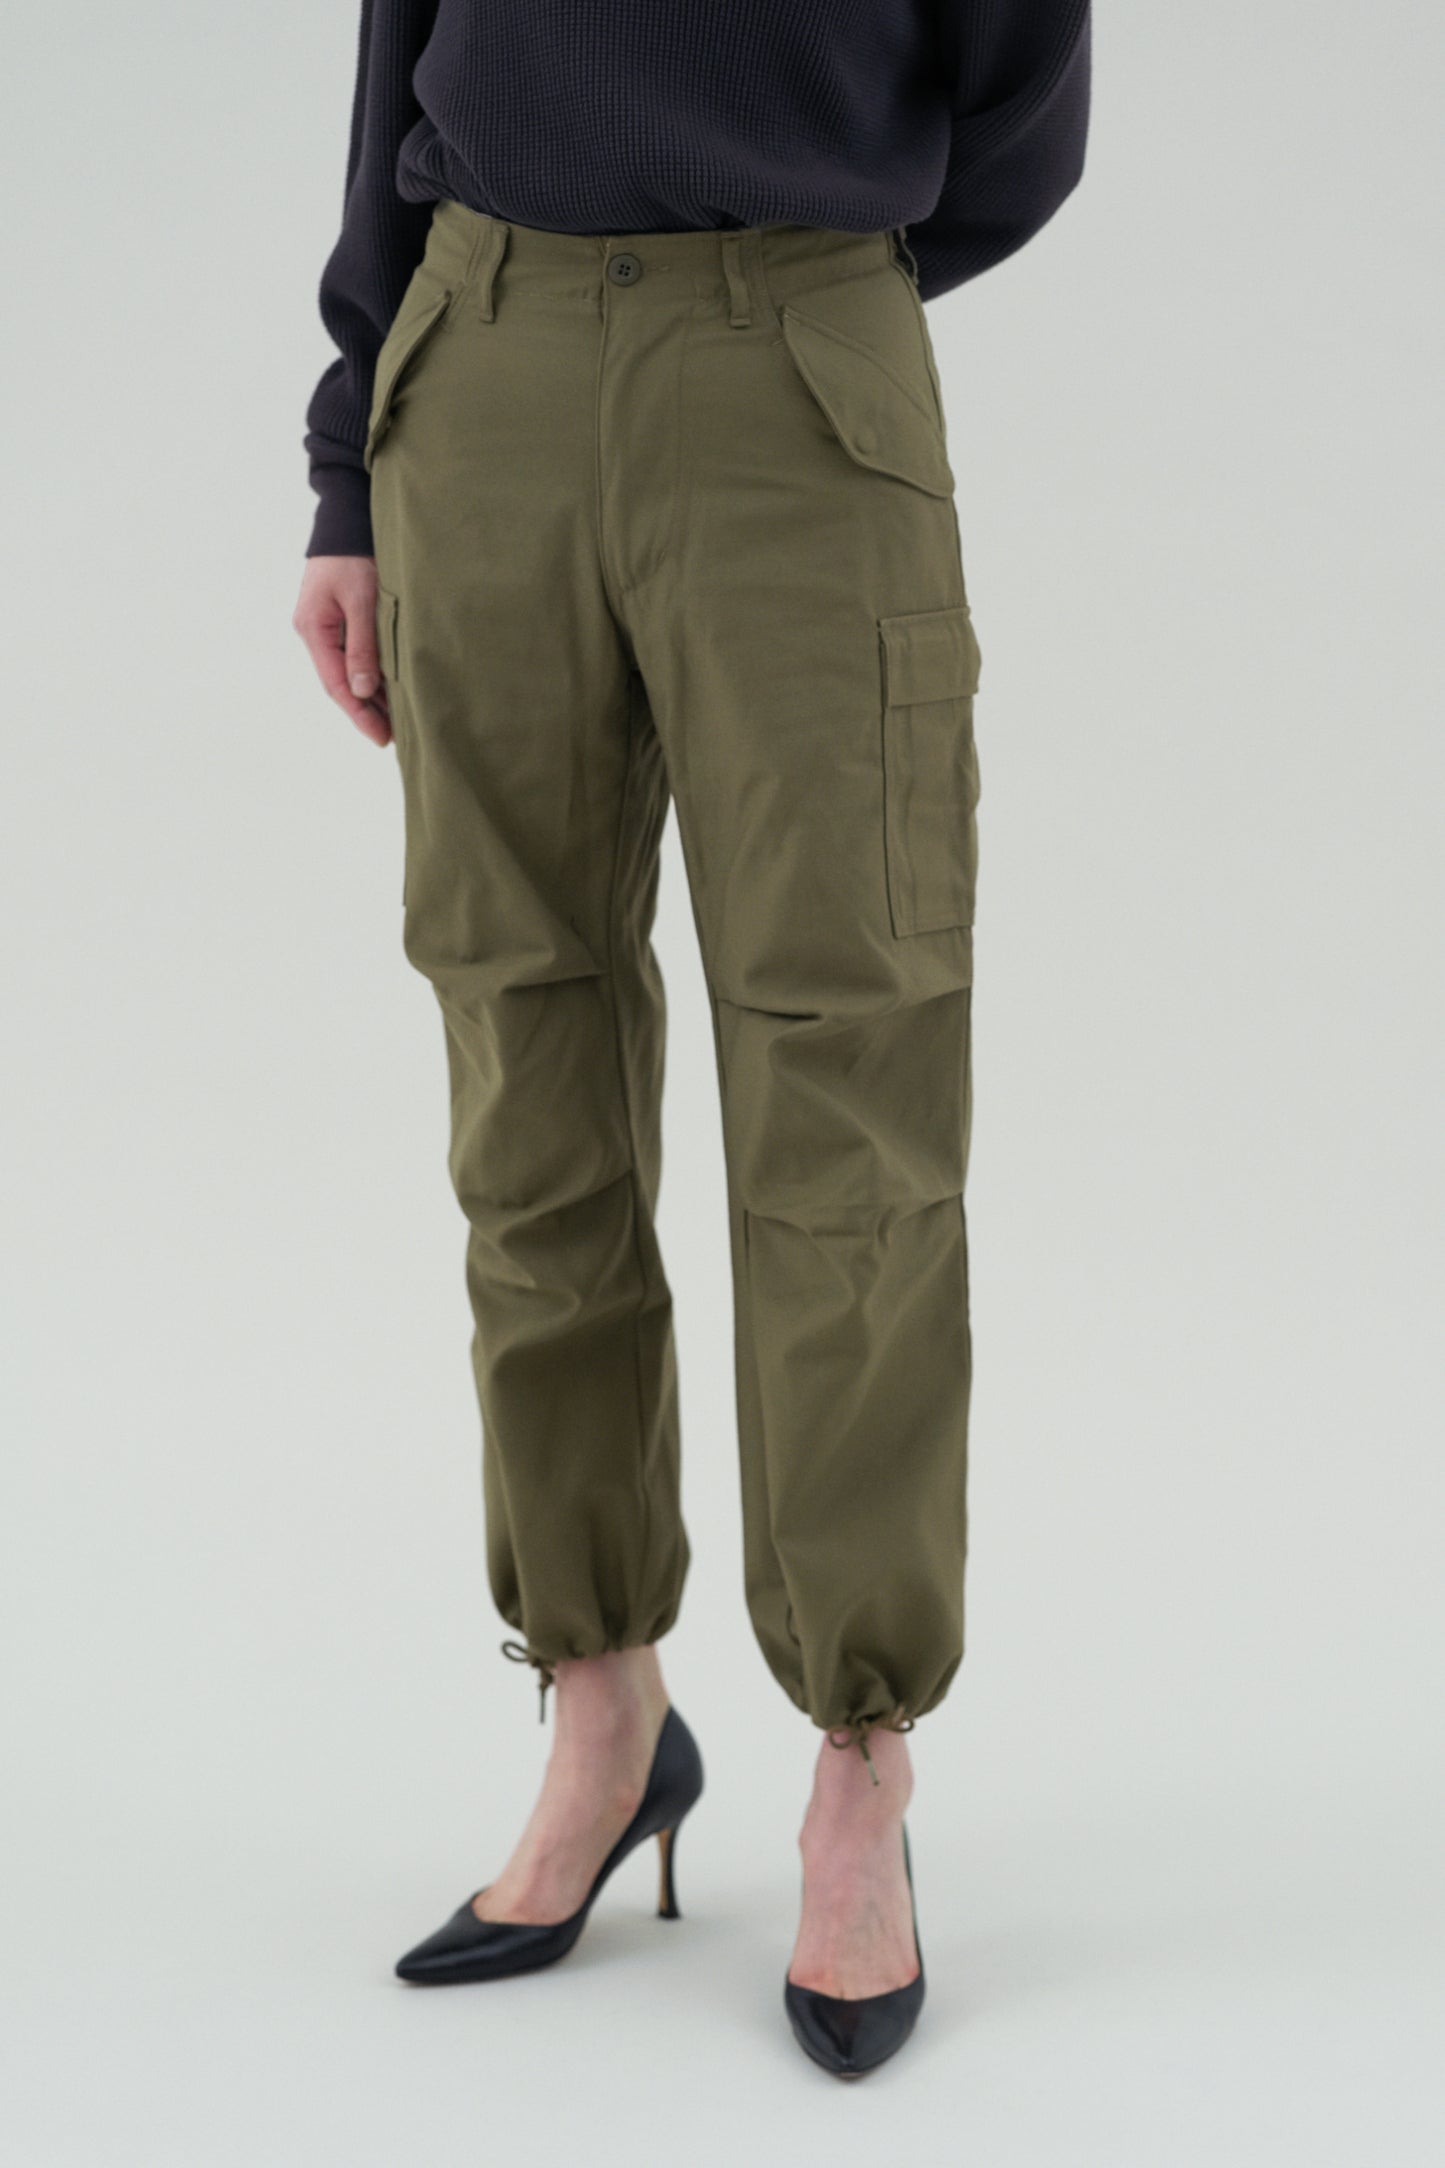 M-65 Field Pants